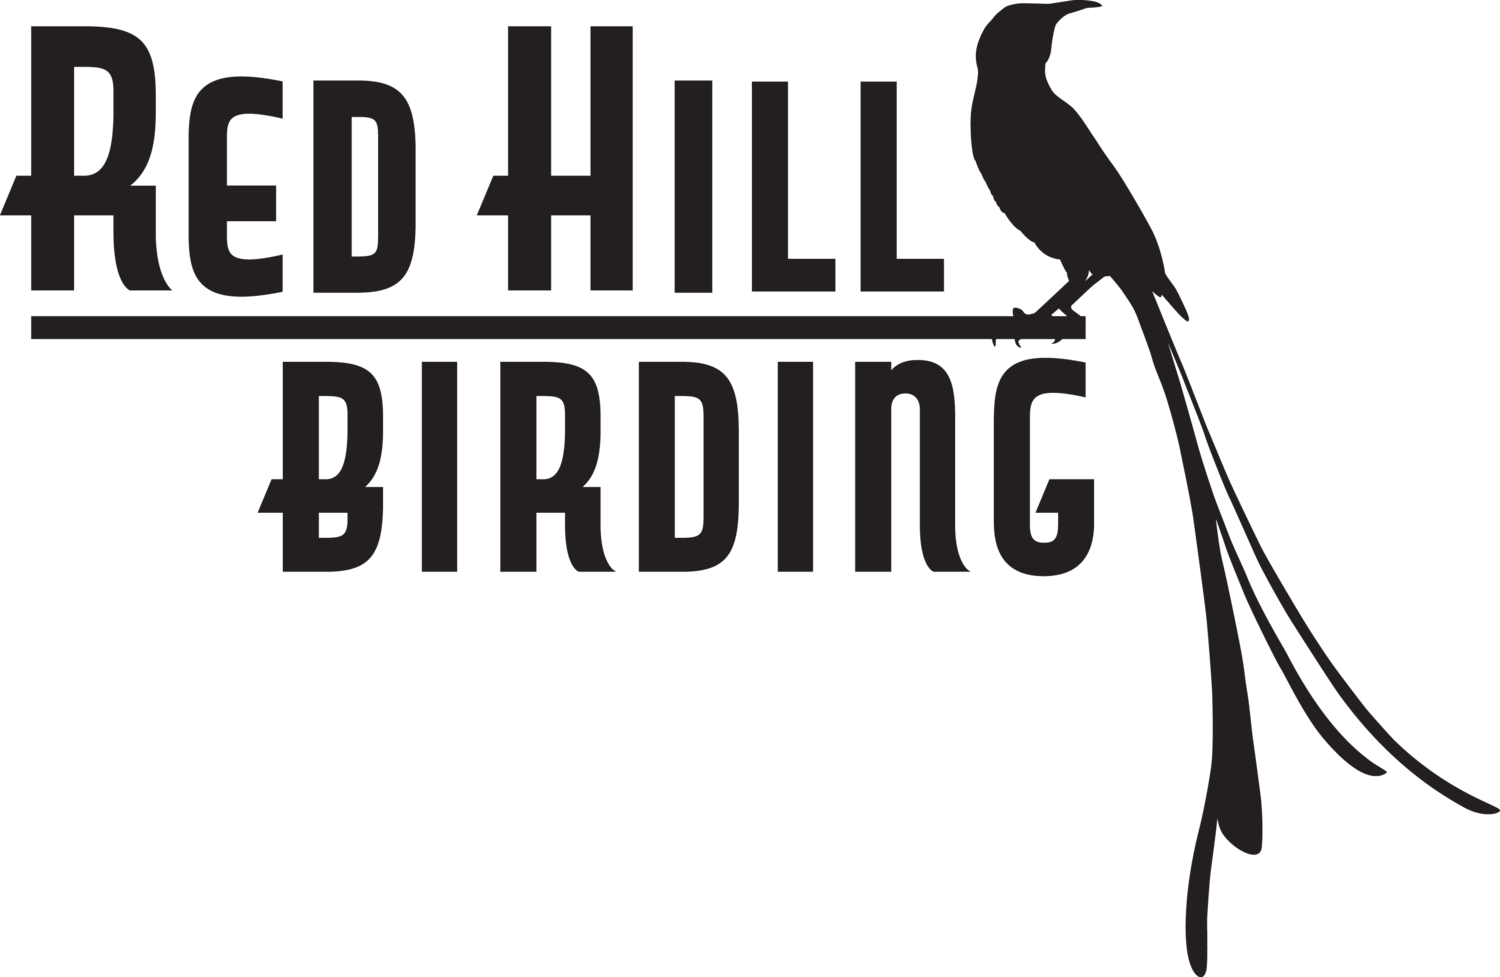 Red Hill Birding